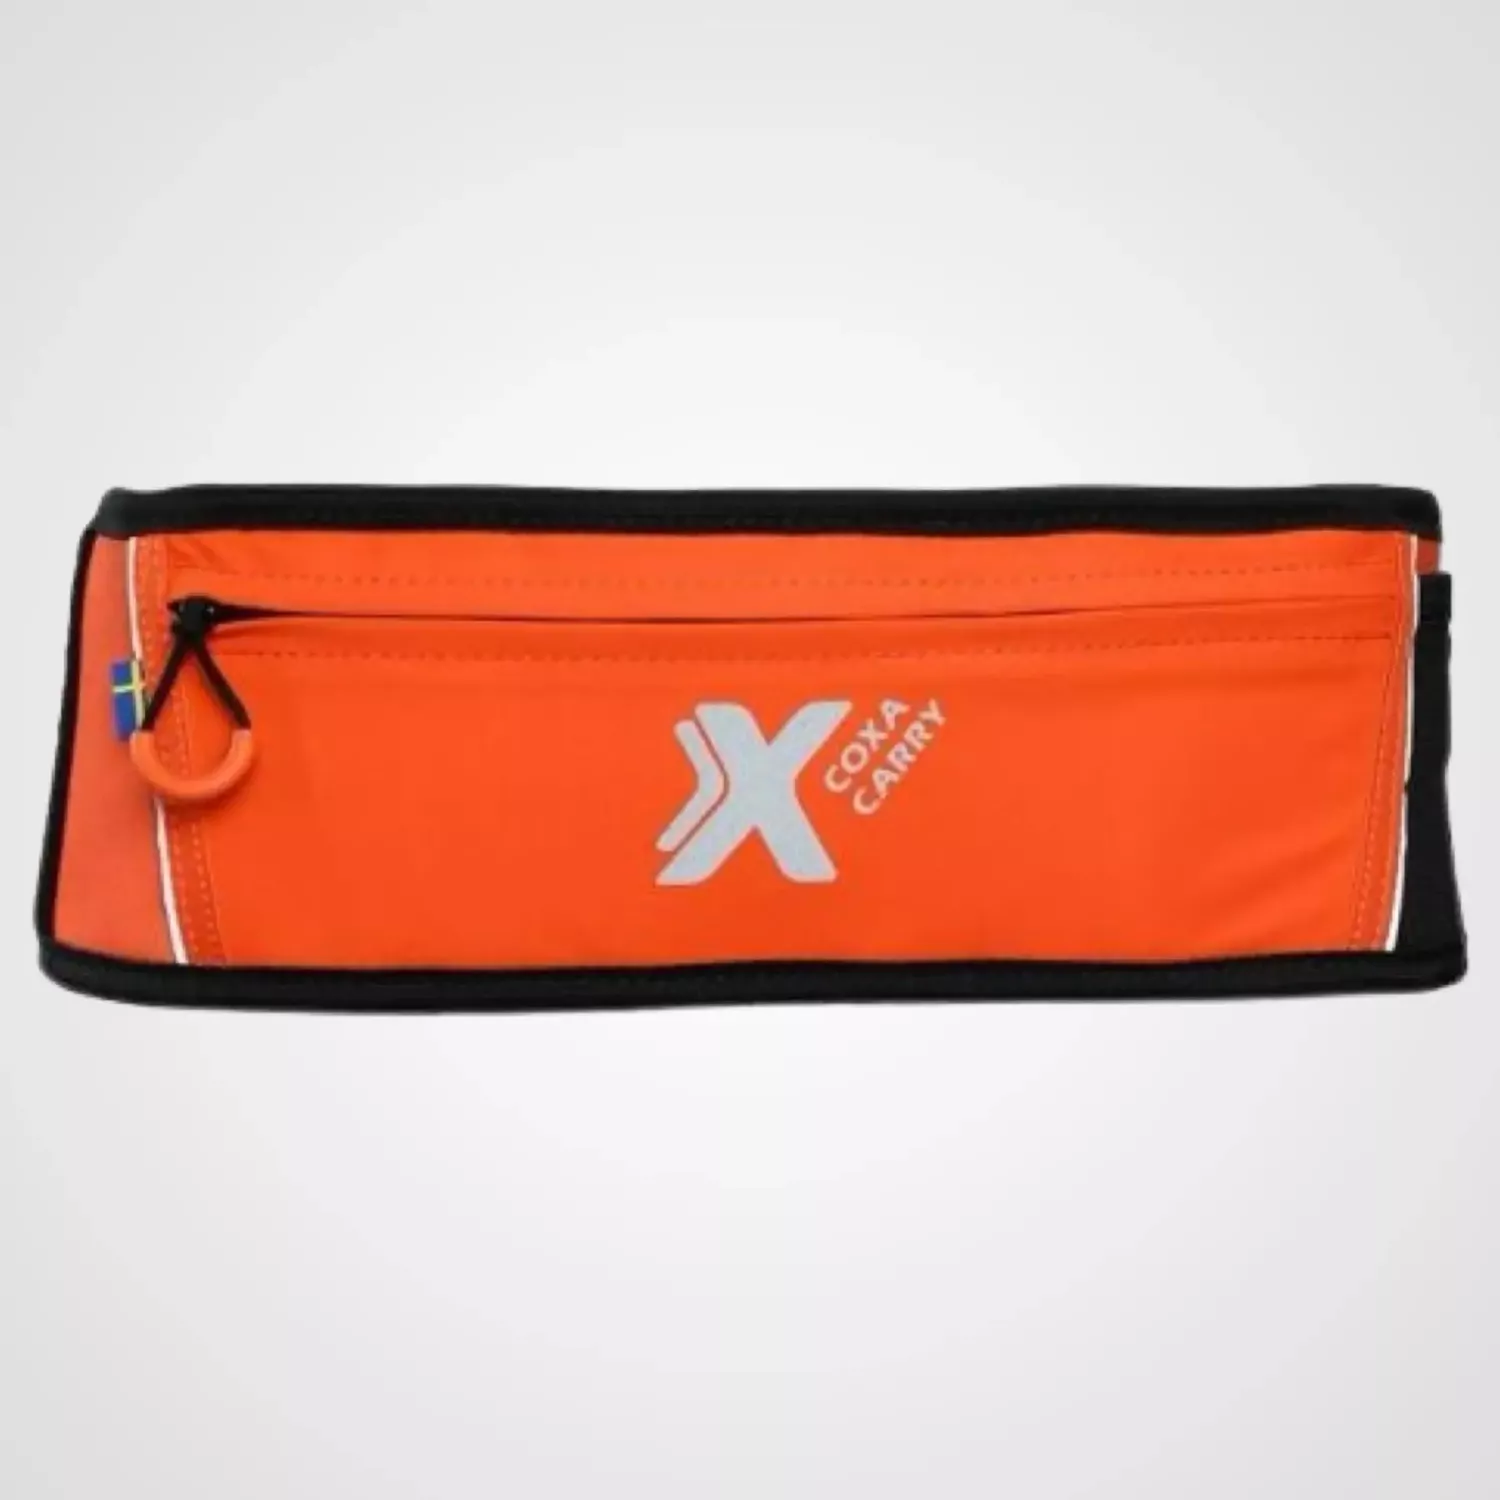 Coxa WB1 Running belt orange